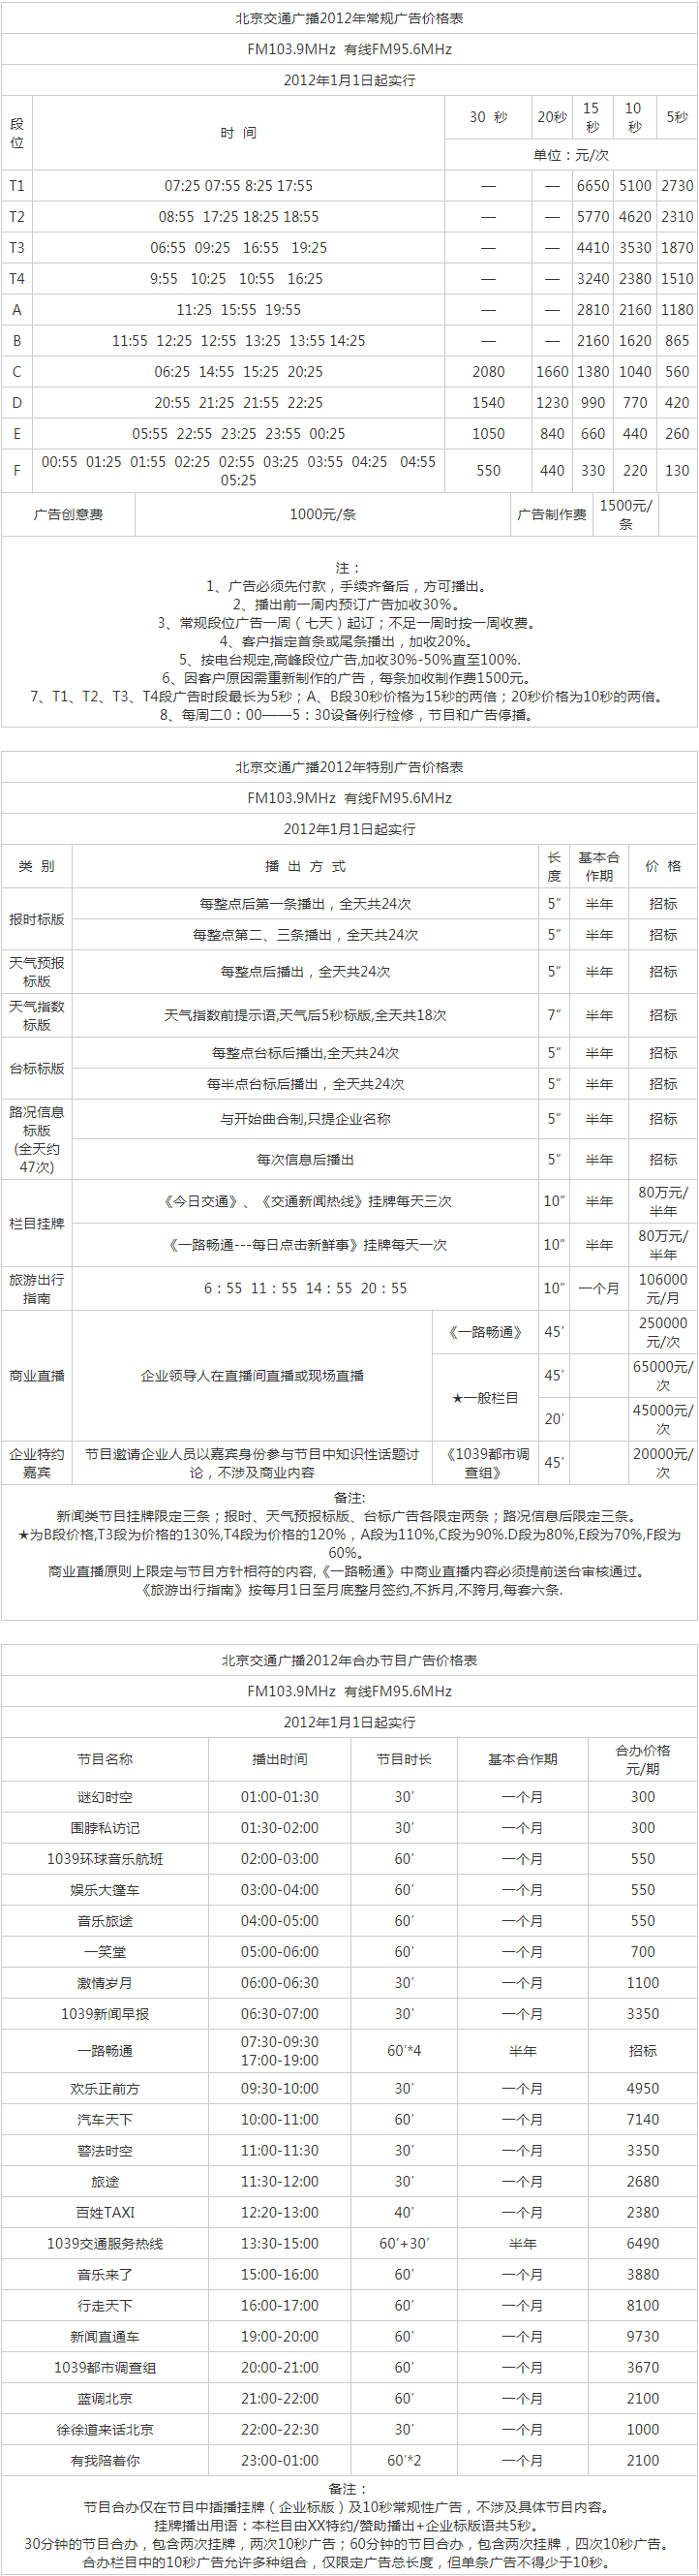 2011北京人民广播电台交通台 FM103.9_FM95.6广告报价表.png